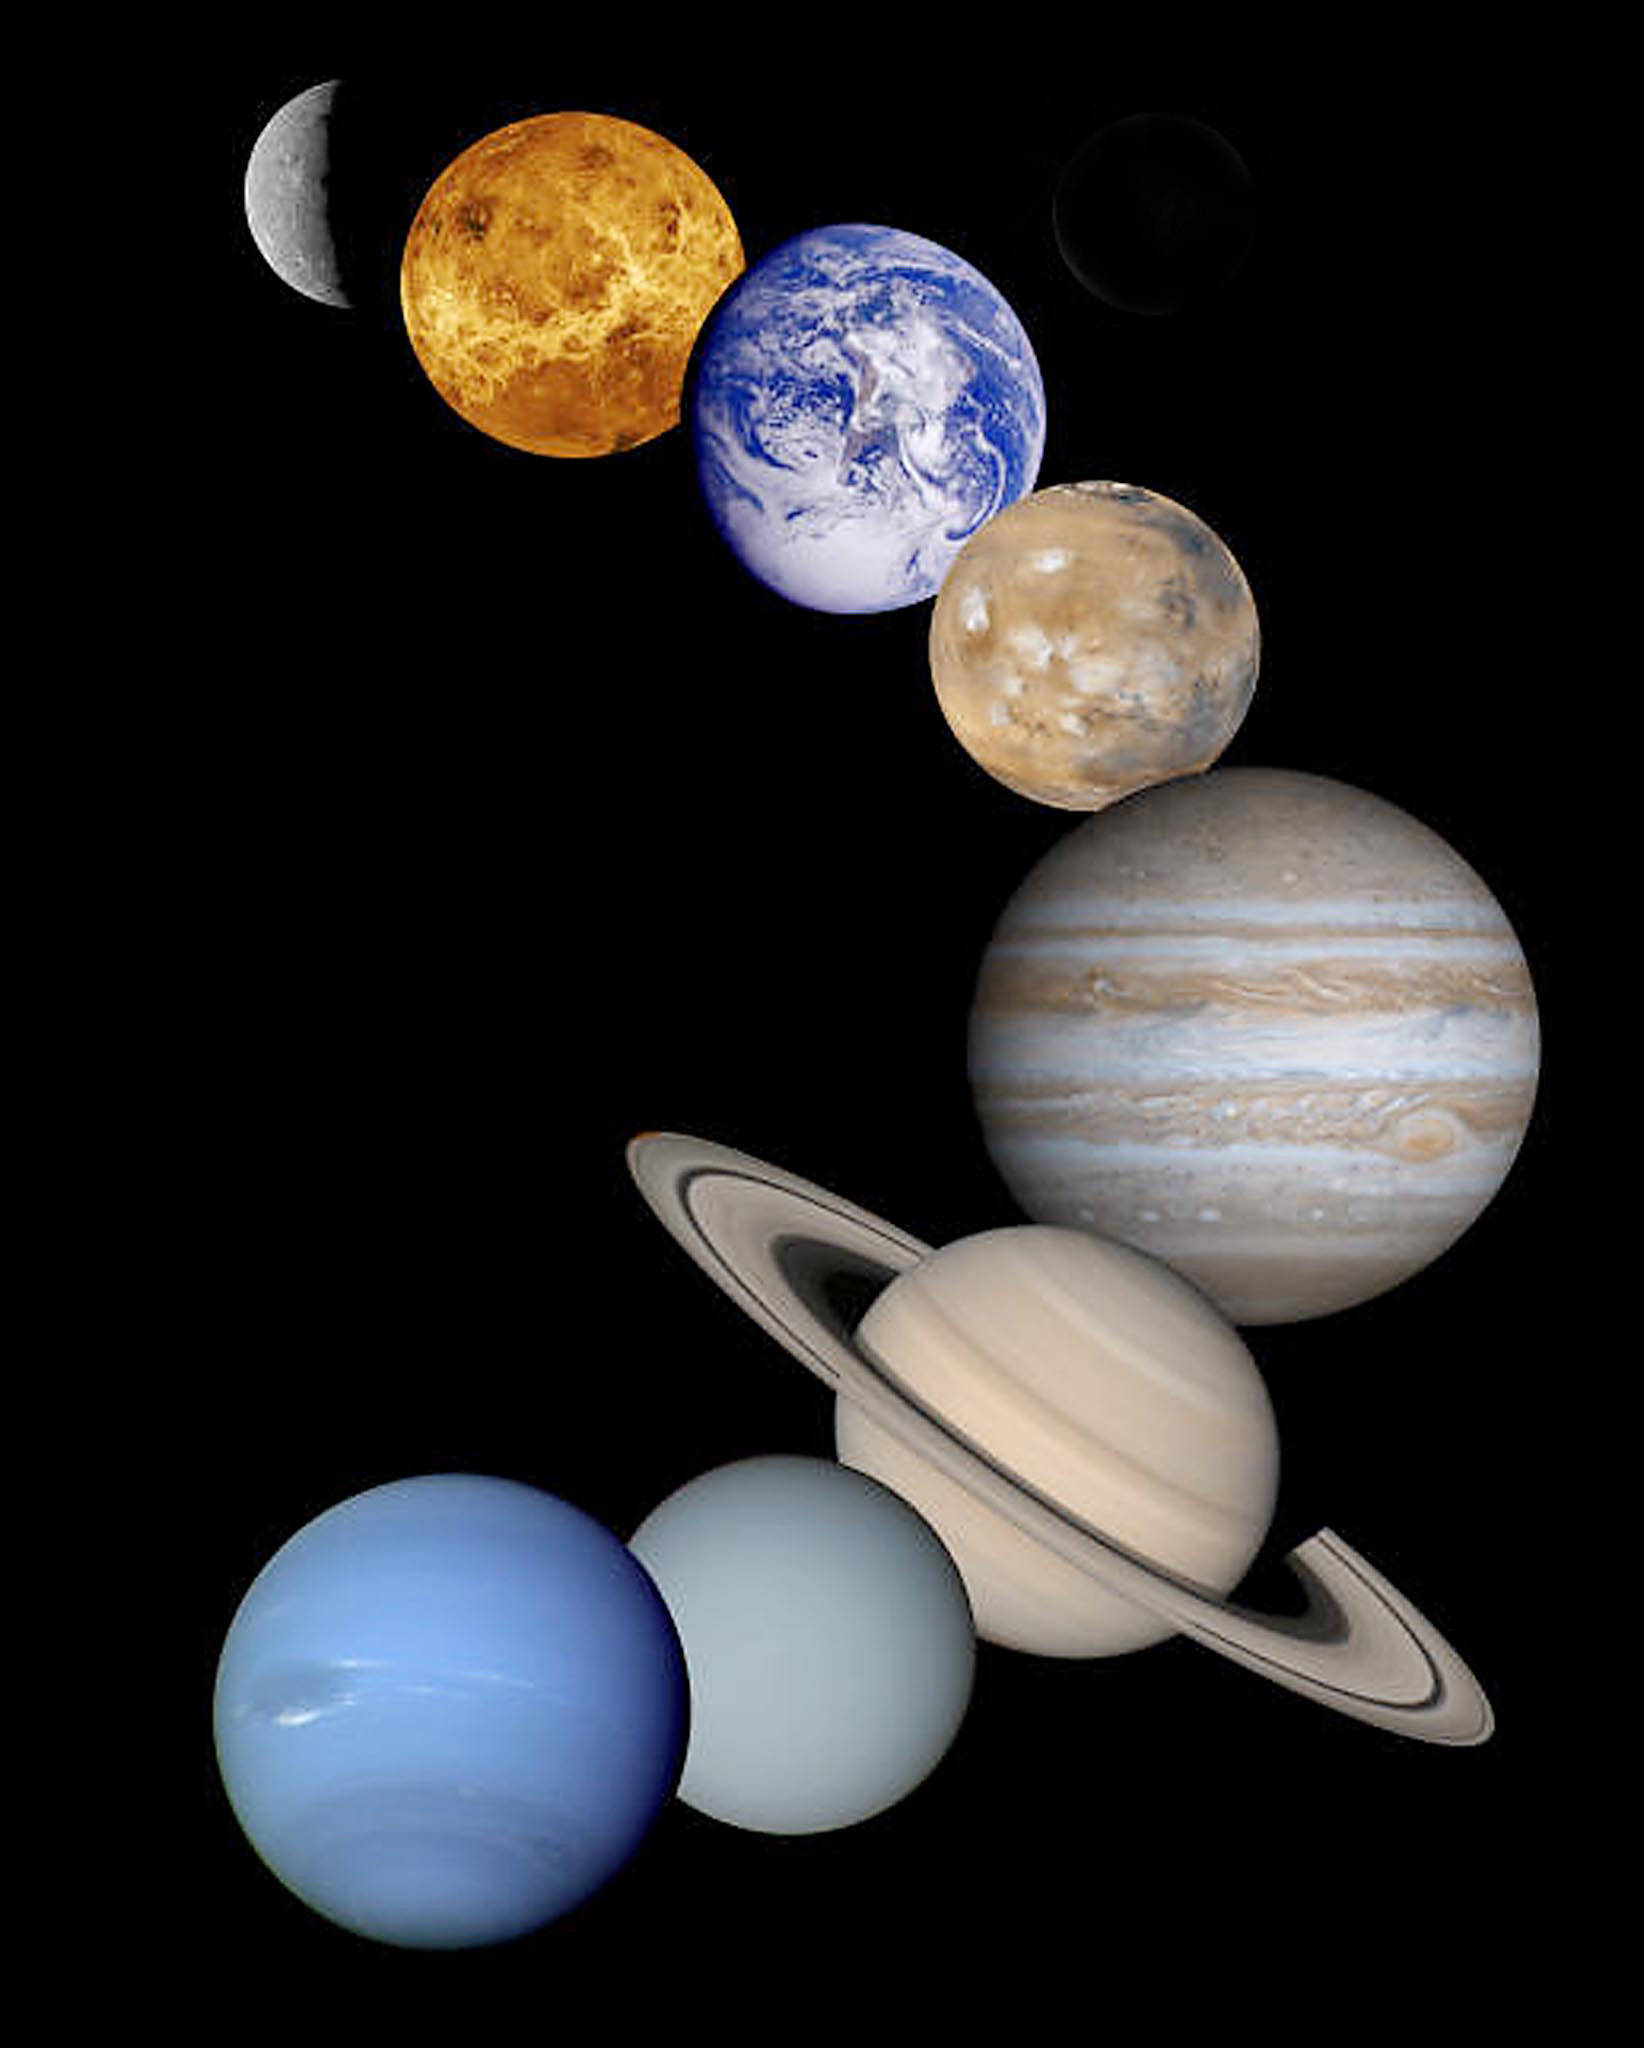 15日天王星"冲日":公众可观淡蓝色圆面天体